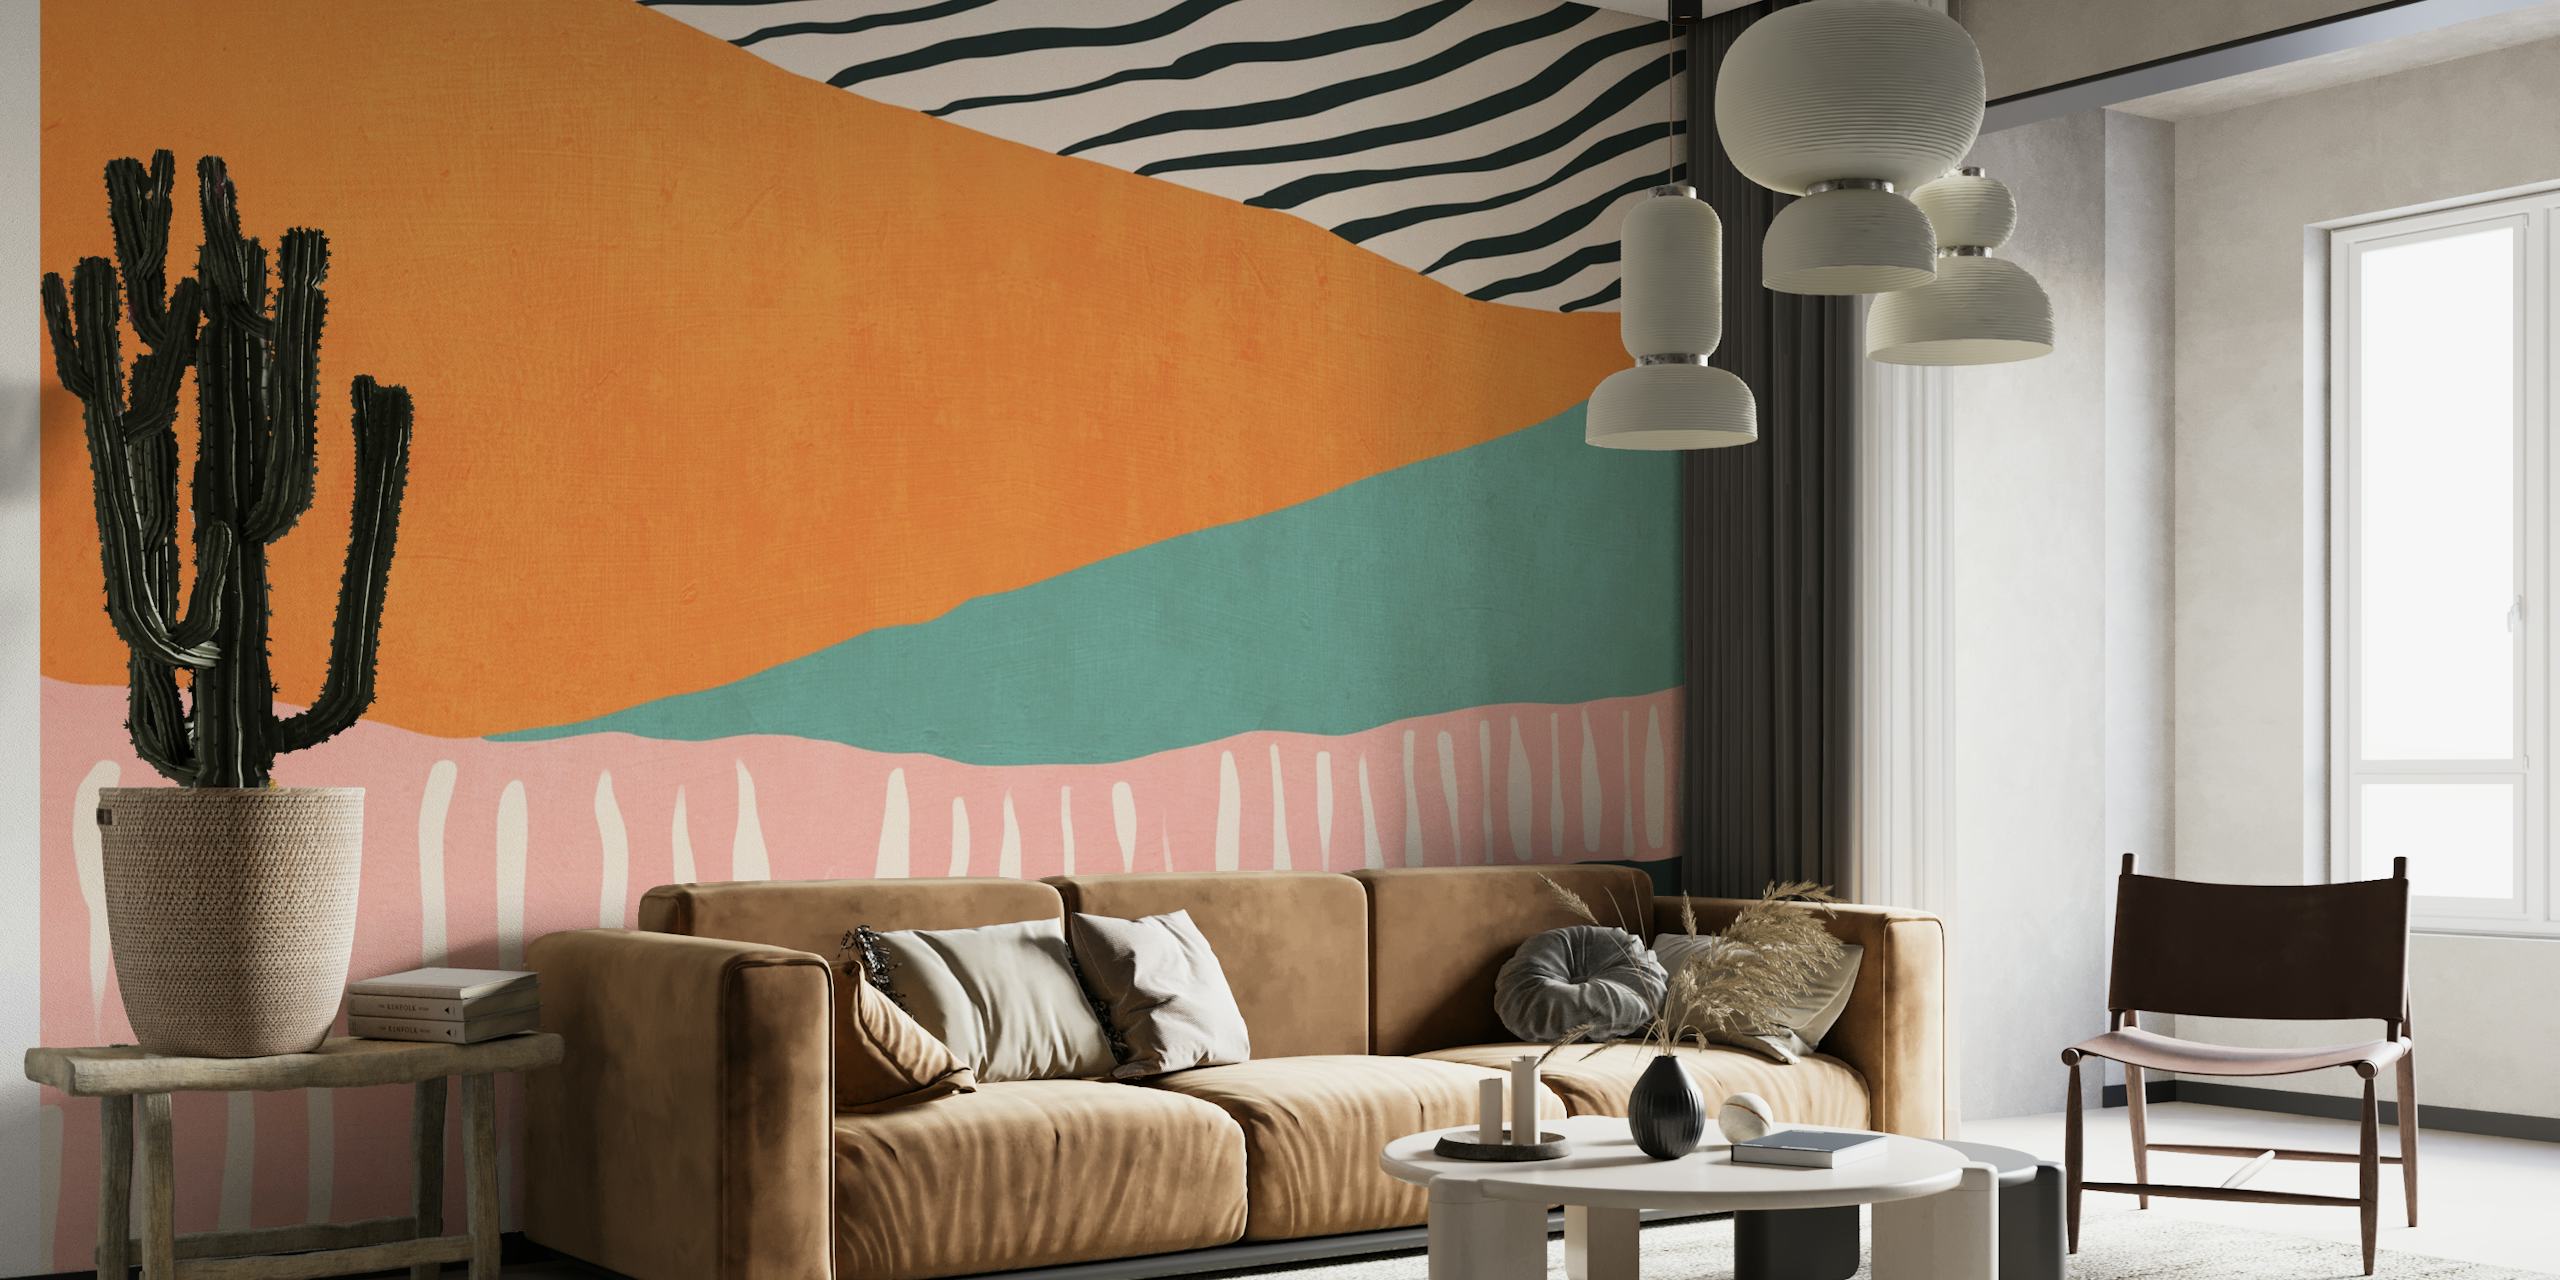 Apstraktni prugasti zidni mural s narančastim, tirkiznim, ružičastim i zelenim uzorcima